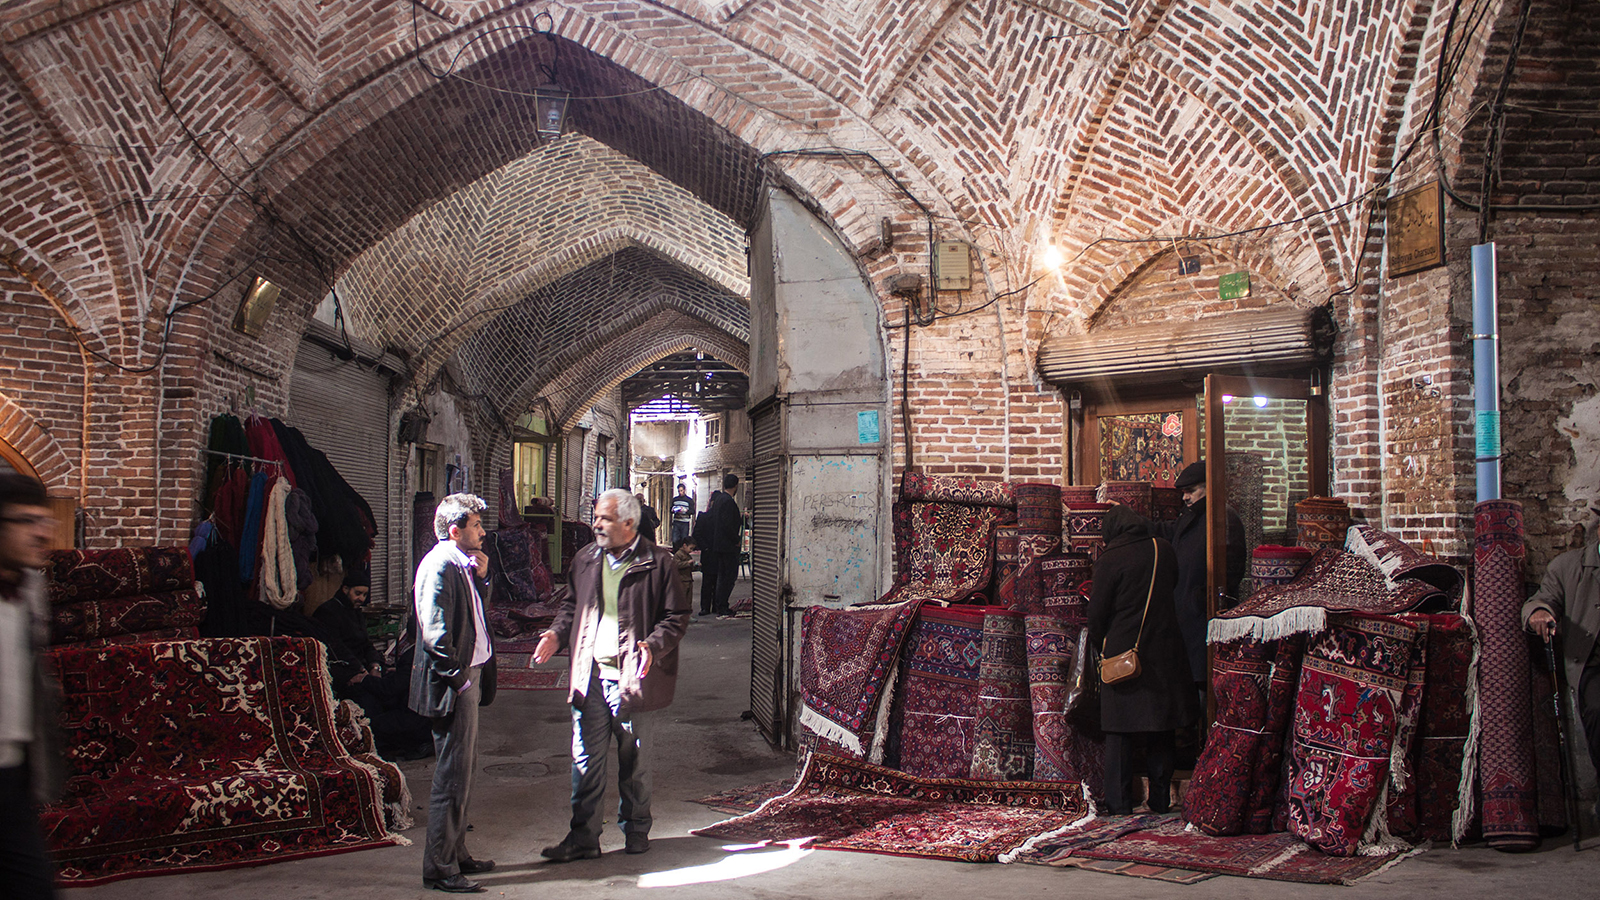 TABRIZ, IRAN - MARCH 10: People in a bazaar on March 10, 2013 in Tabriz, Iran. Bazaar of Tabriz was inscribed as World Heritage Site by UNESCO in July 2010.; Shutterstock ID 135882587; PO: New Kids Website